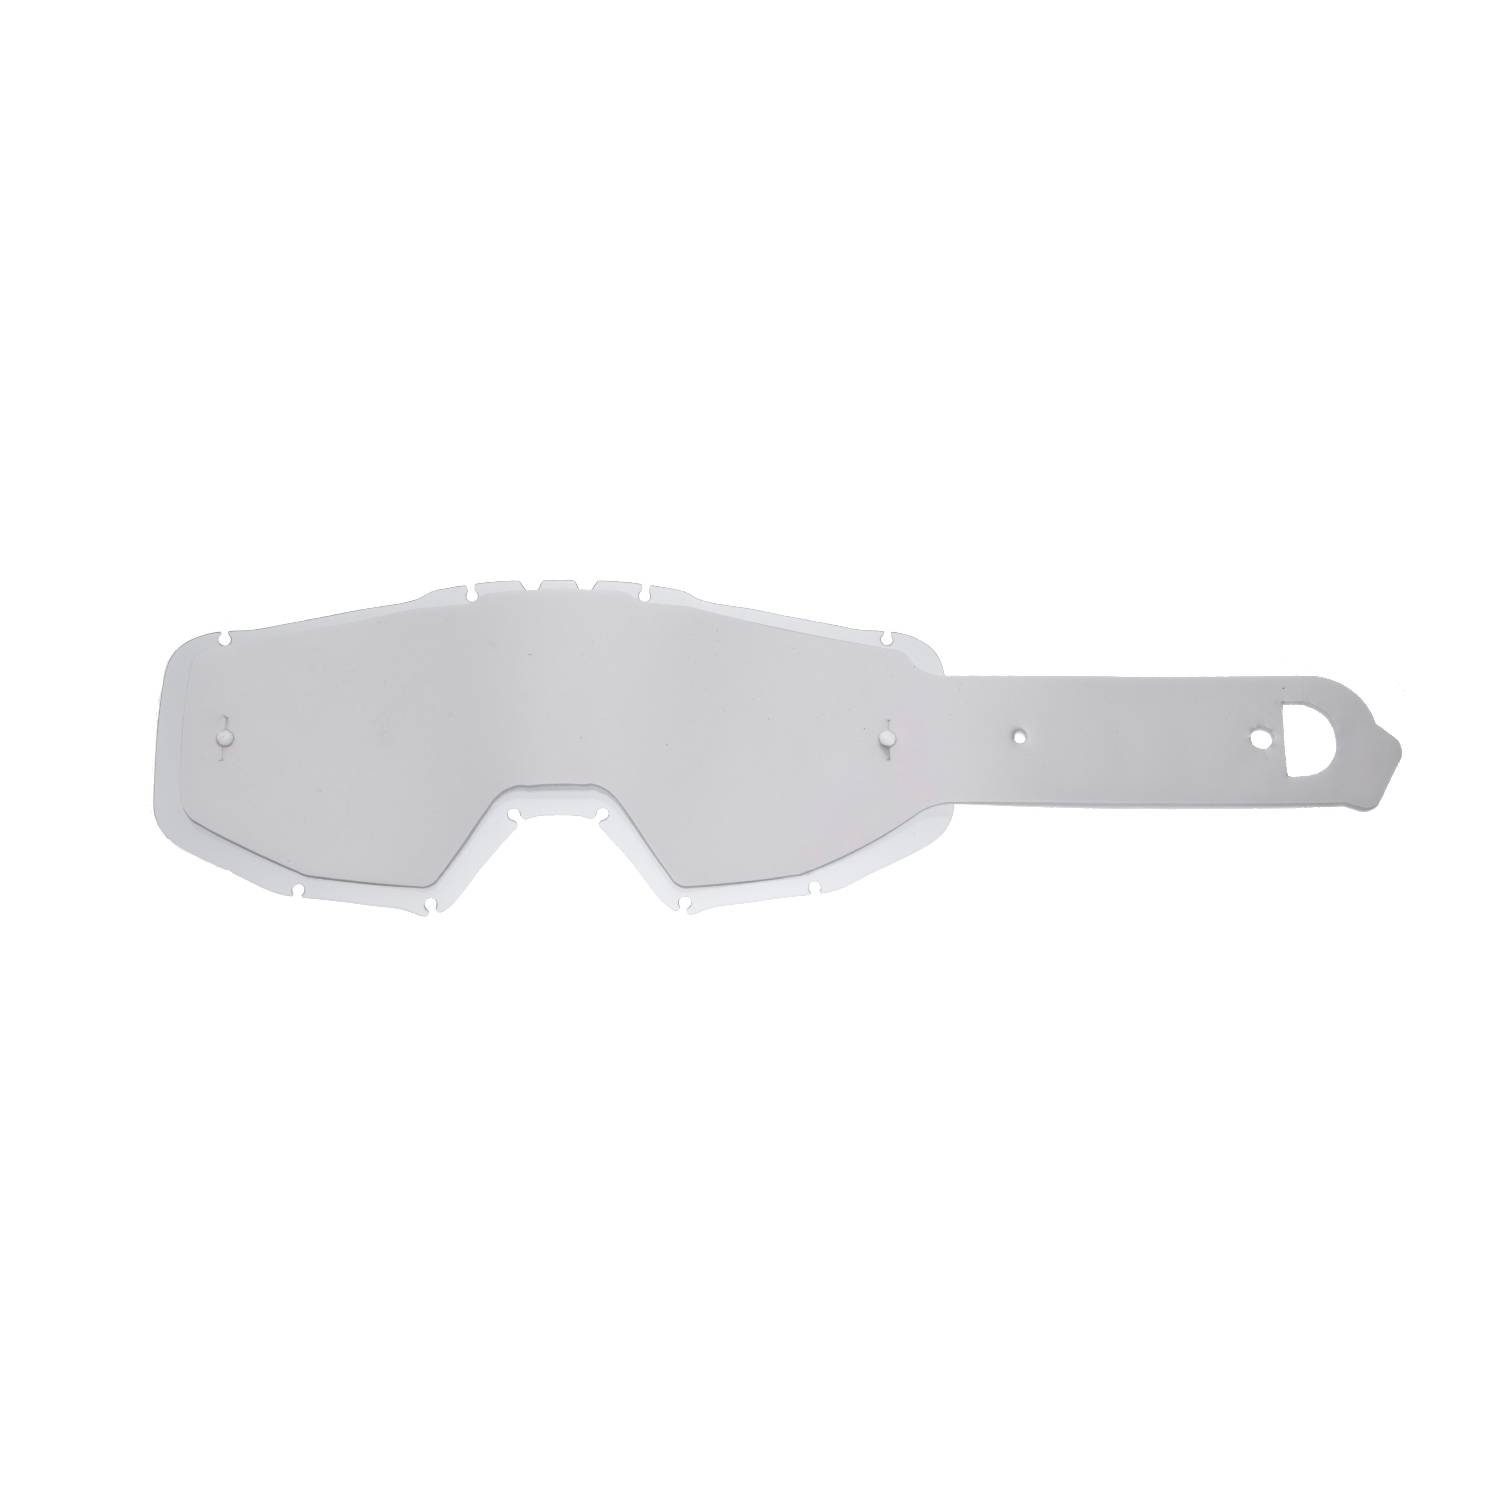 Lente trasparente + 10 Strappi (Combo) compatibile per occhiale/maschera Just1 Iris / Vitro